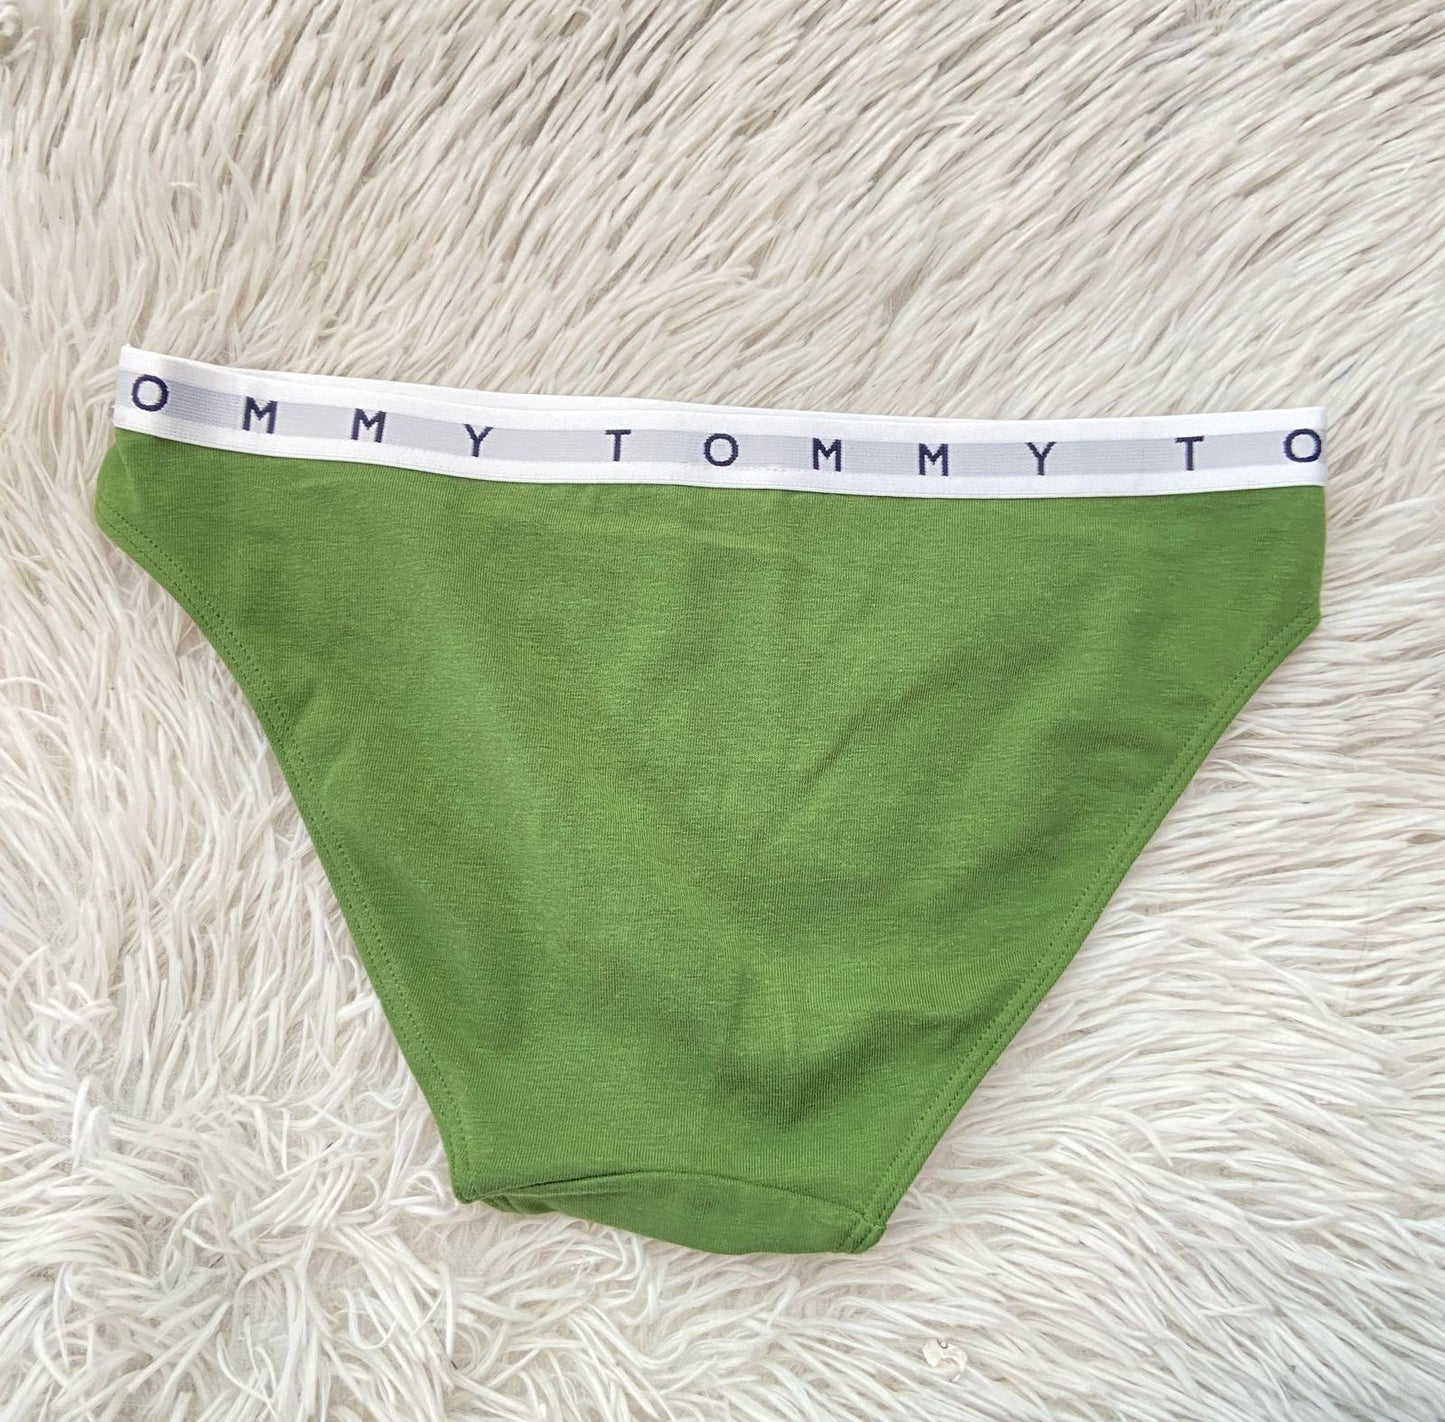 Panti Tommy Hilfiger Original verde con banda en color blanco y letras TOMMY.